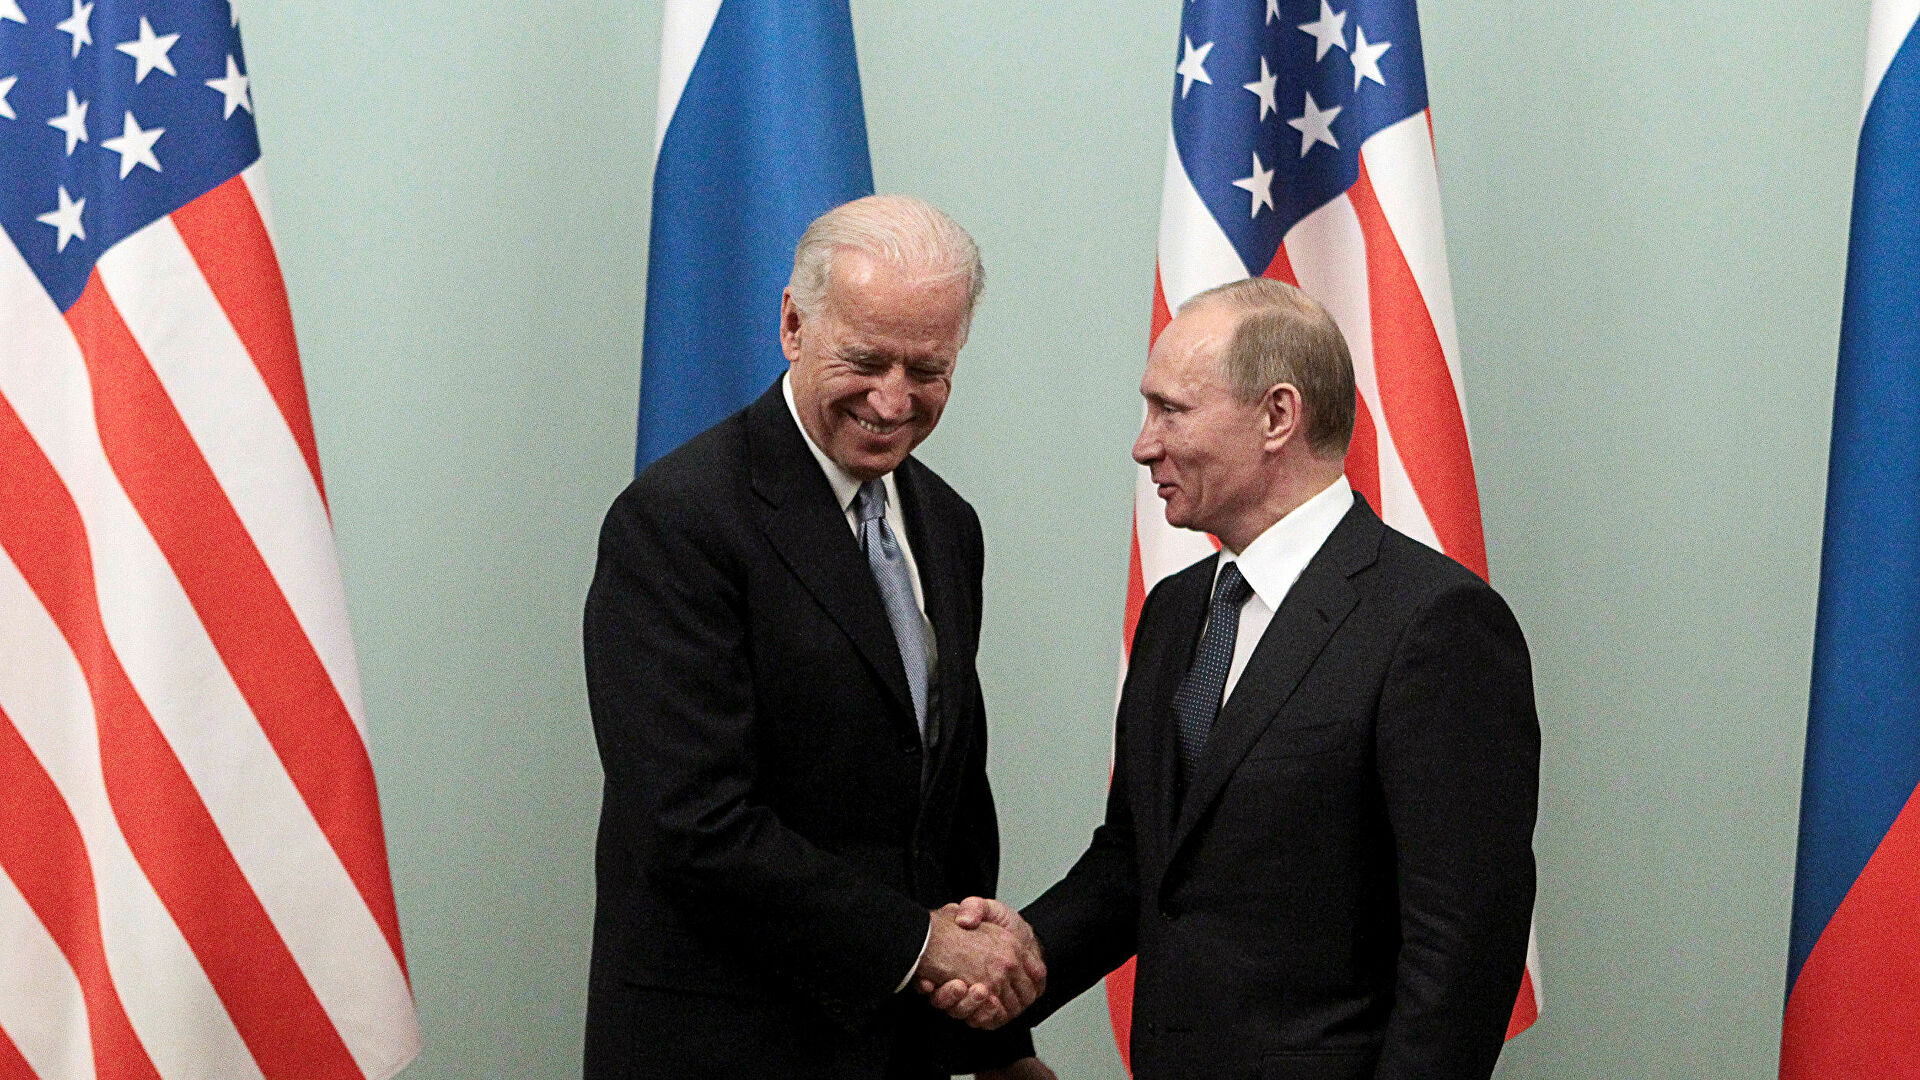 Rusya dan Biden a sert tepki!